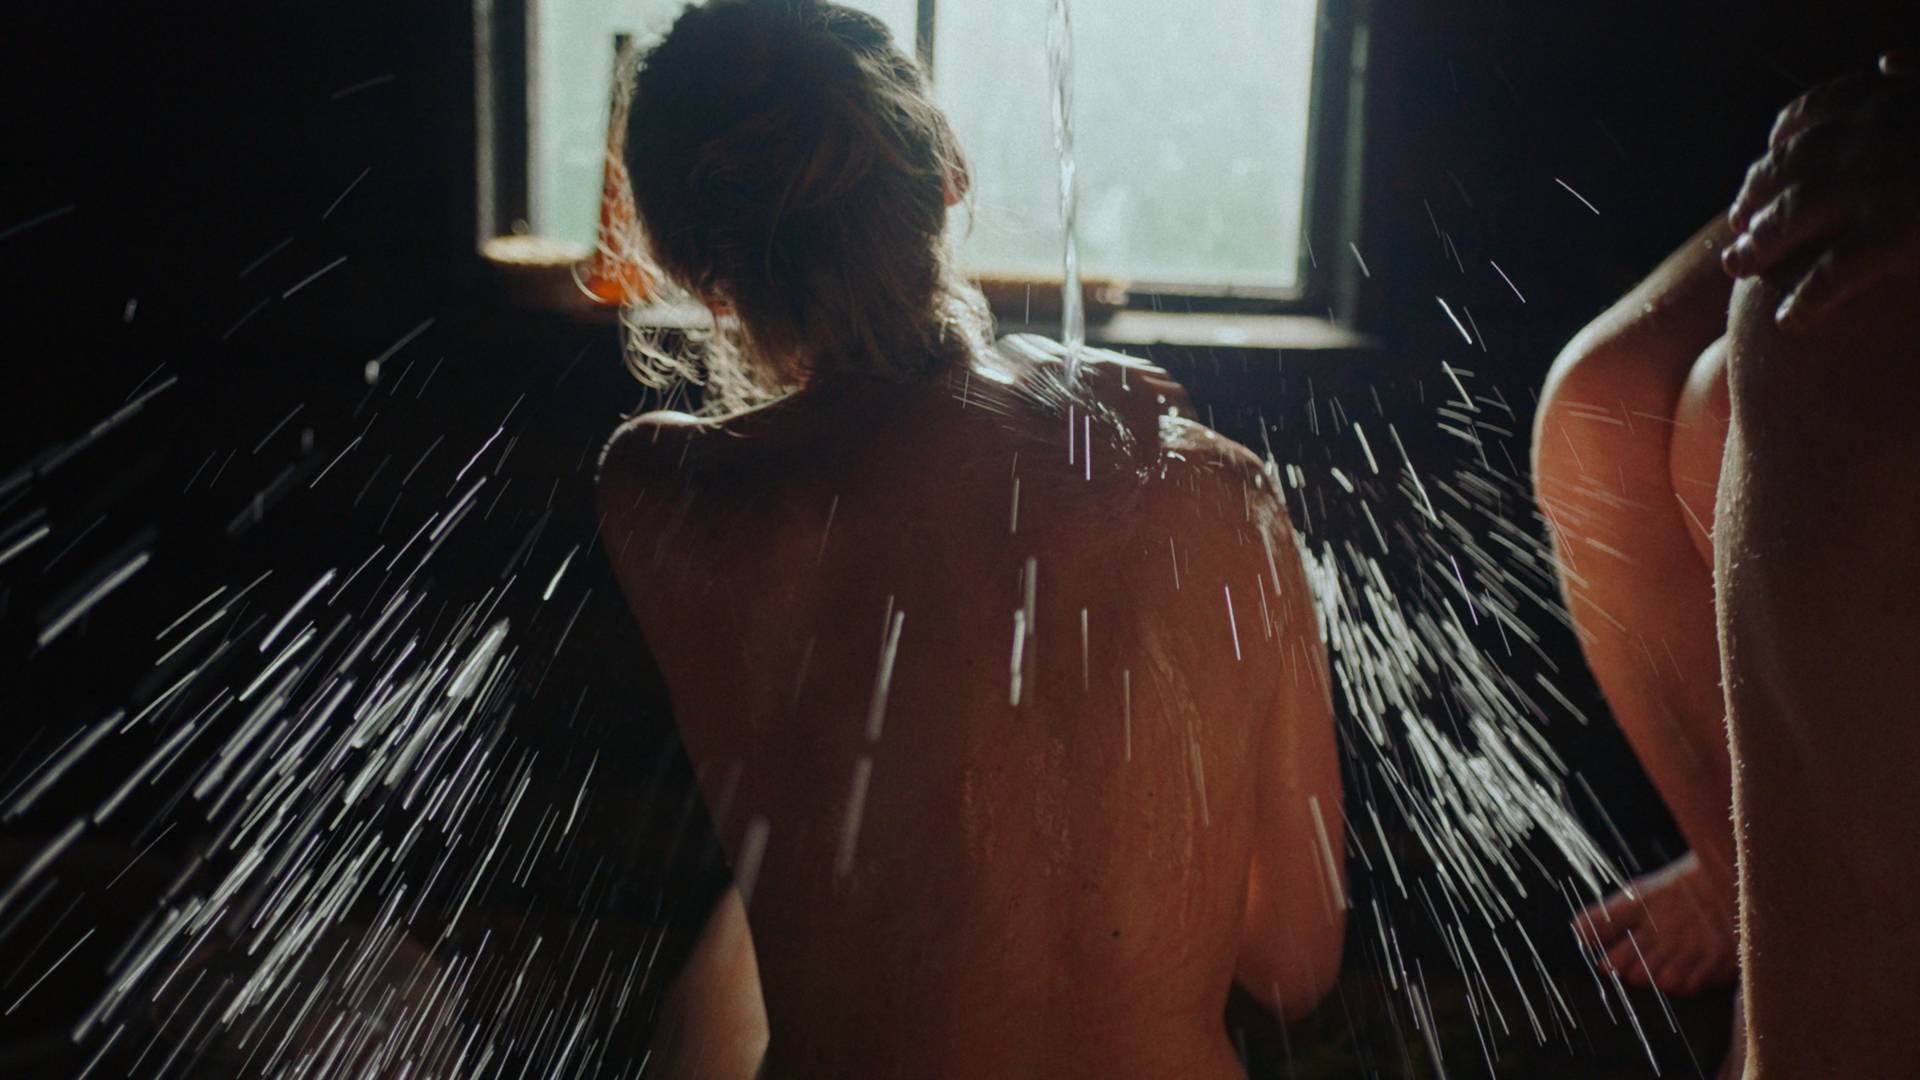 Poruszający i lepki. Film, który dzięki saunie pokazuje siłę kobiecego doświadczenia. "Siostrzeństwo świętej sauny" już w kinach!